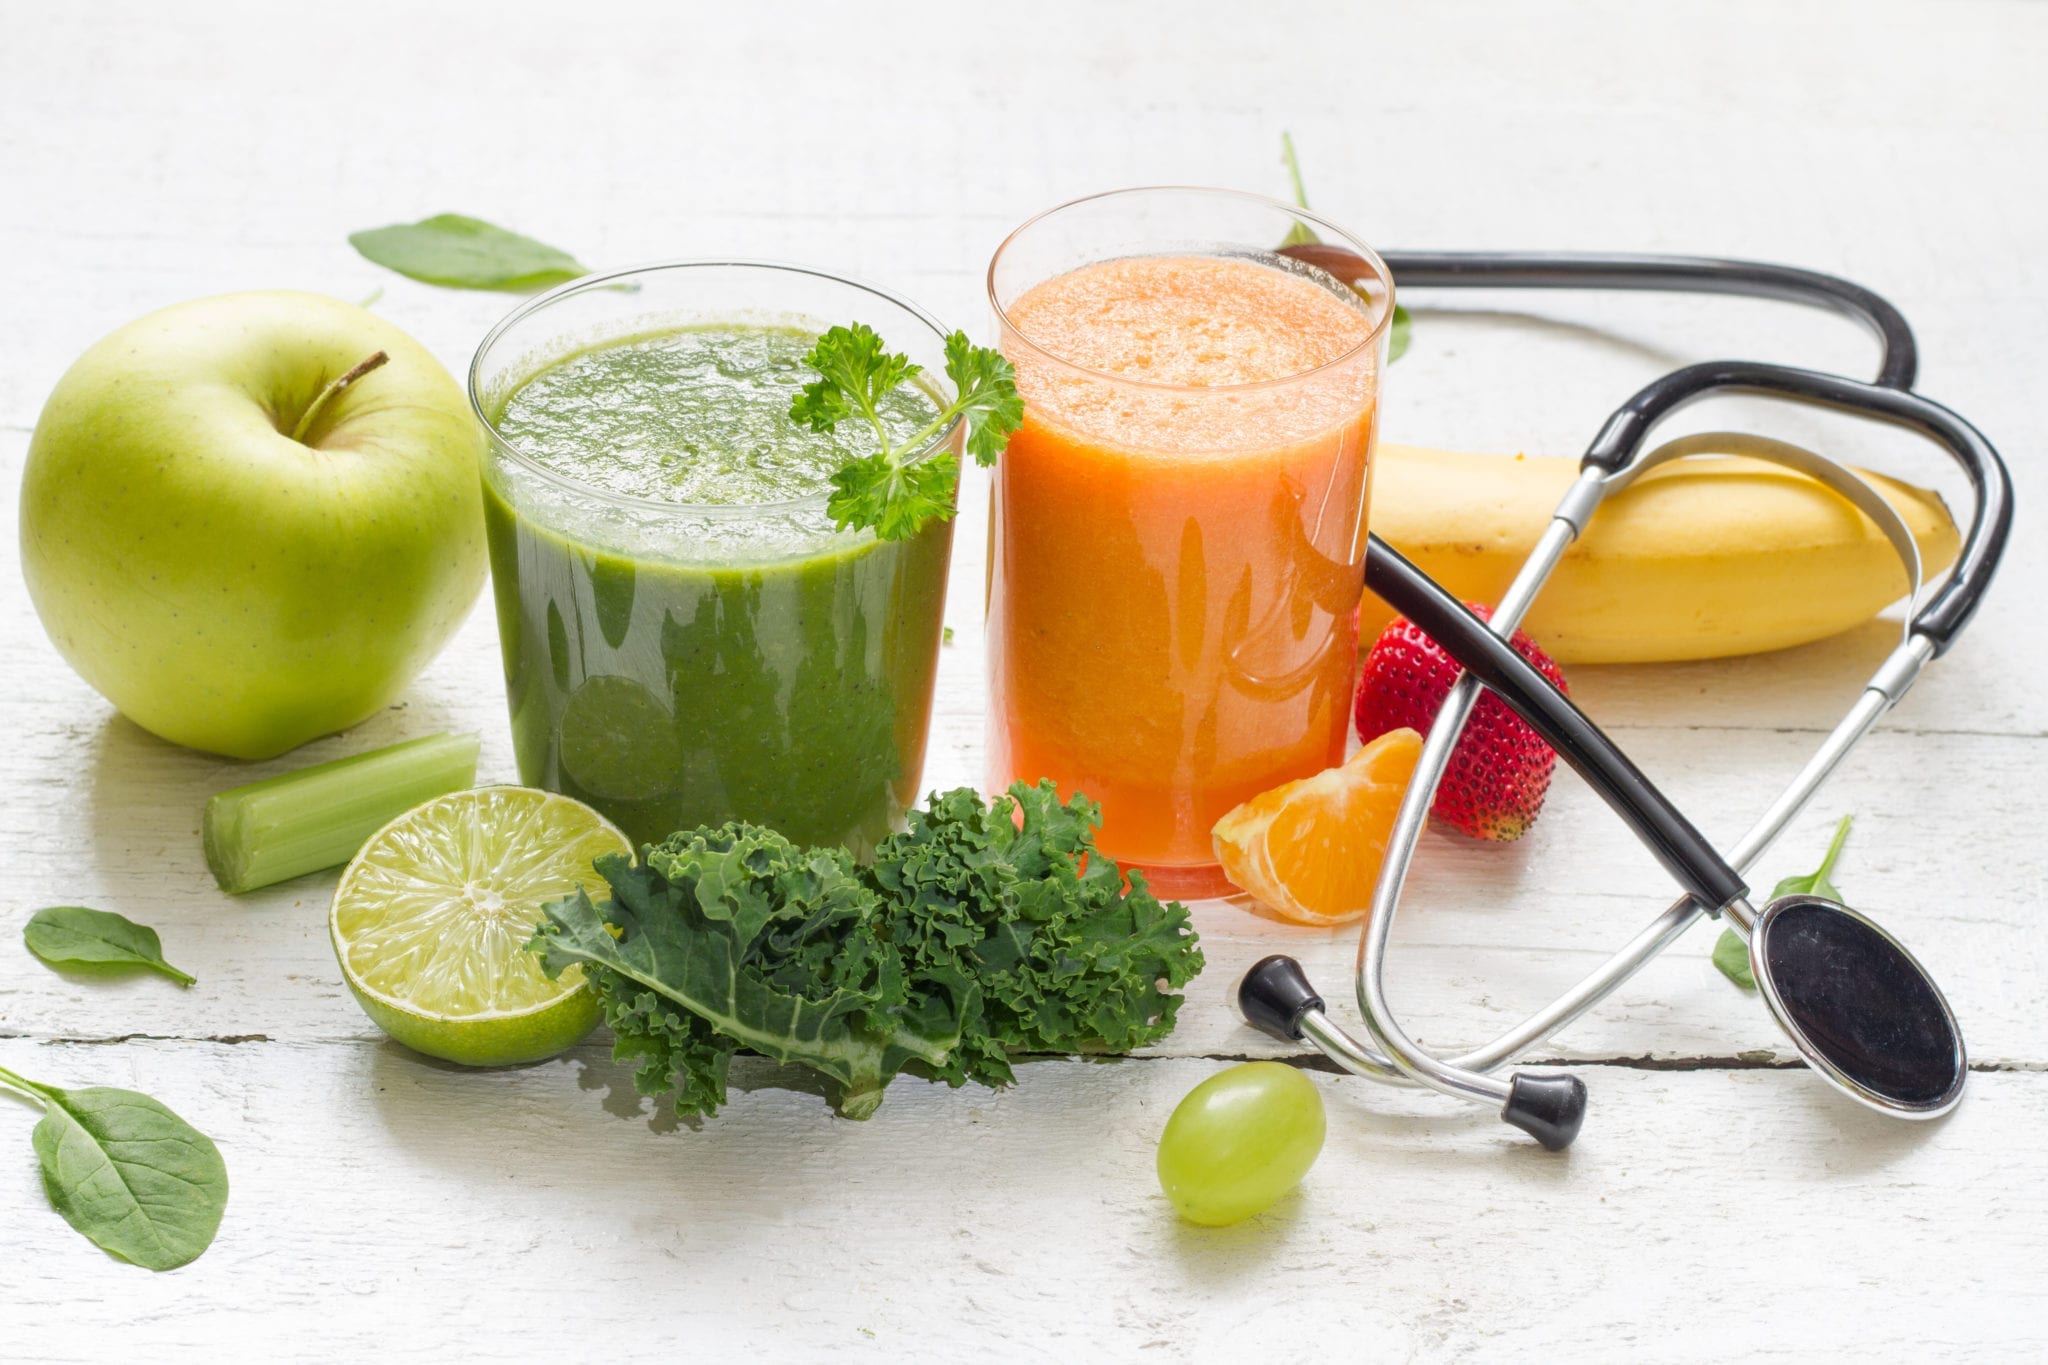 Очищение организма рецепты для похудения. Детокс питание. Овощной сок. Смузи из овощей и фруктов. Питание очищение детокс.